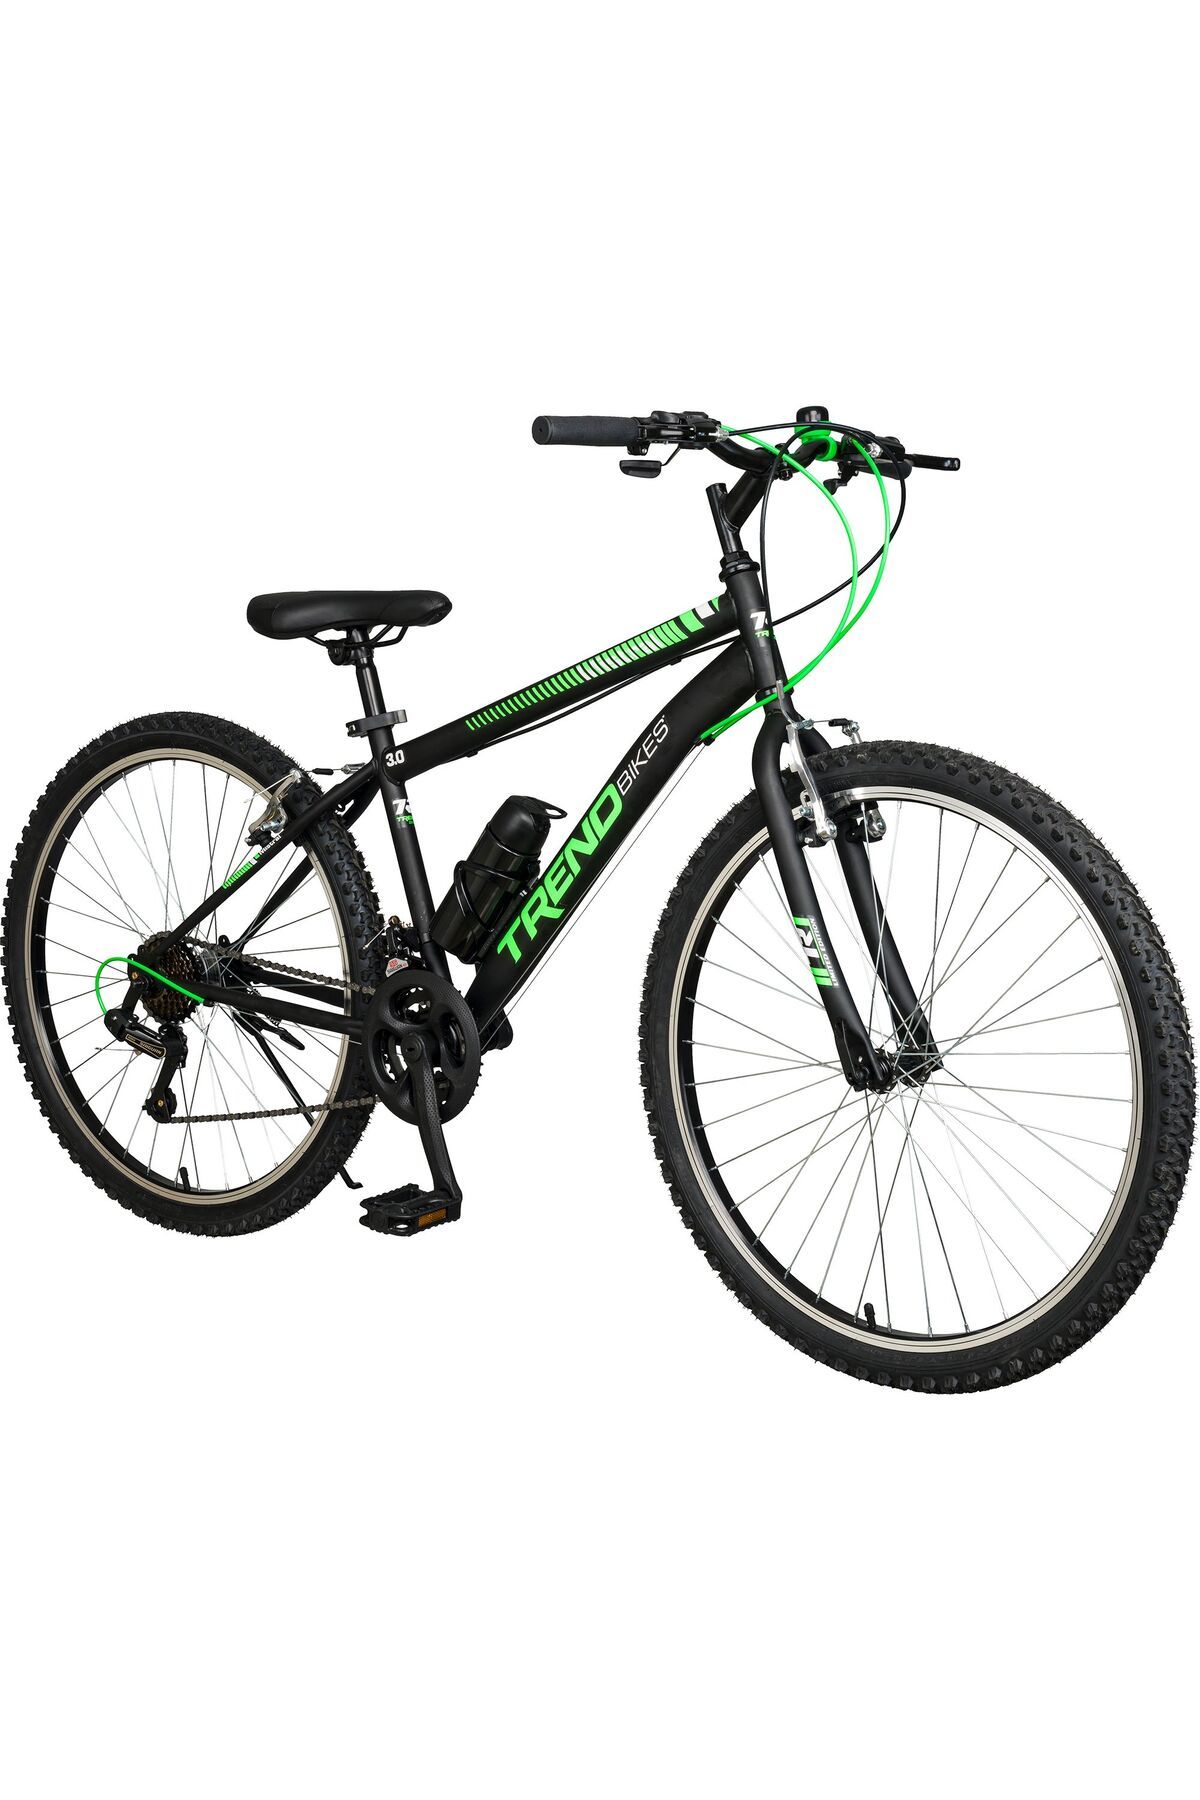 TRENDBIKE Mistral 24 Jant 21 Vites Erkek Dağ Bisikleti Siyah-yeşil